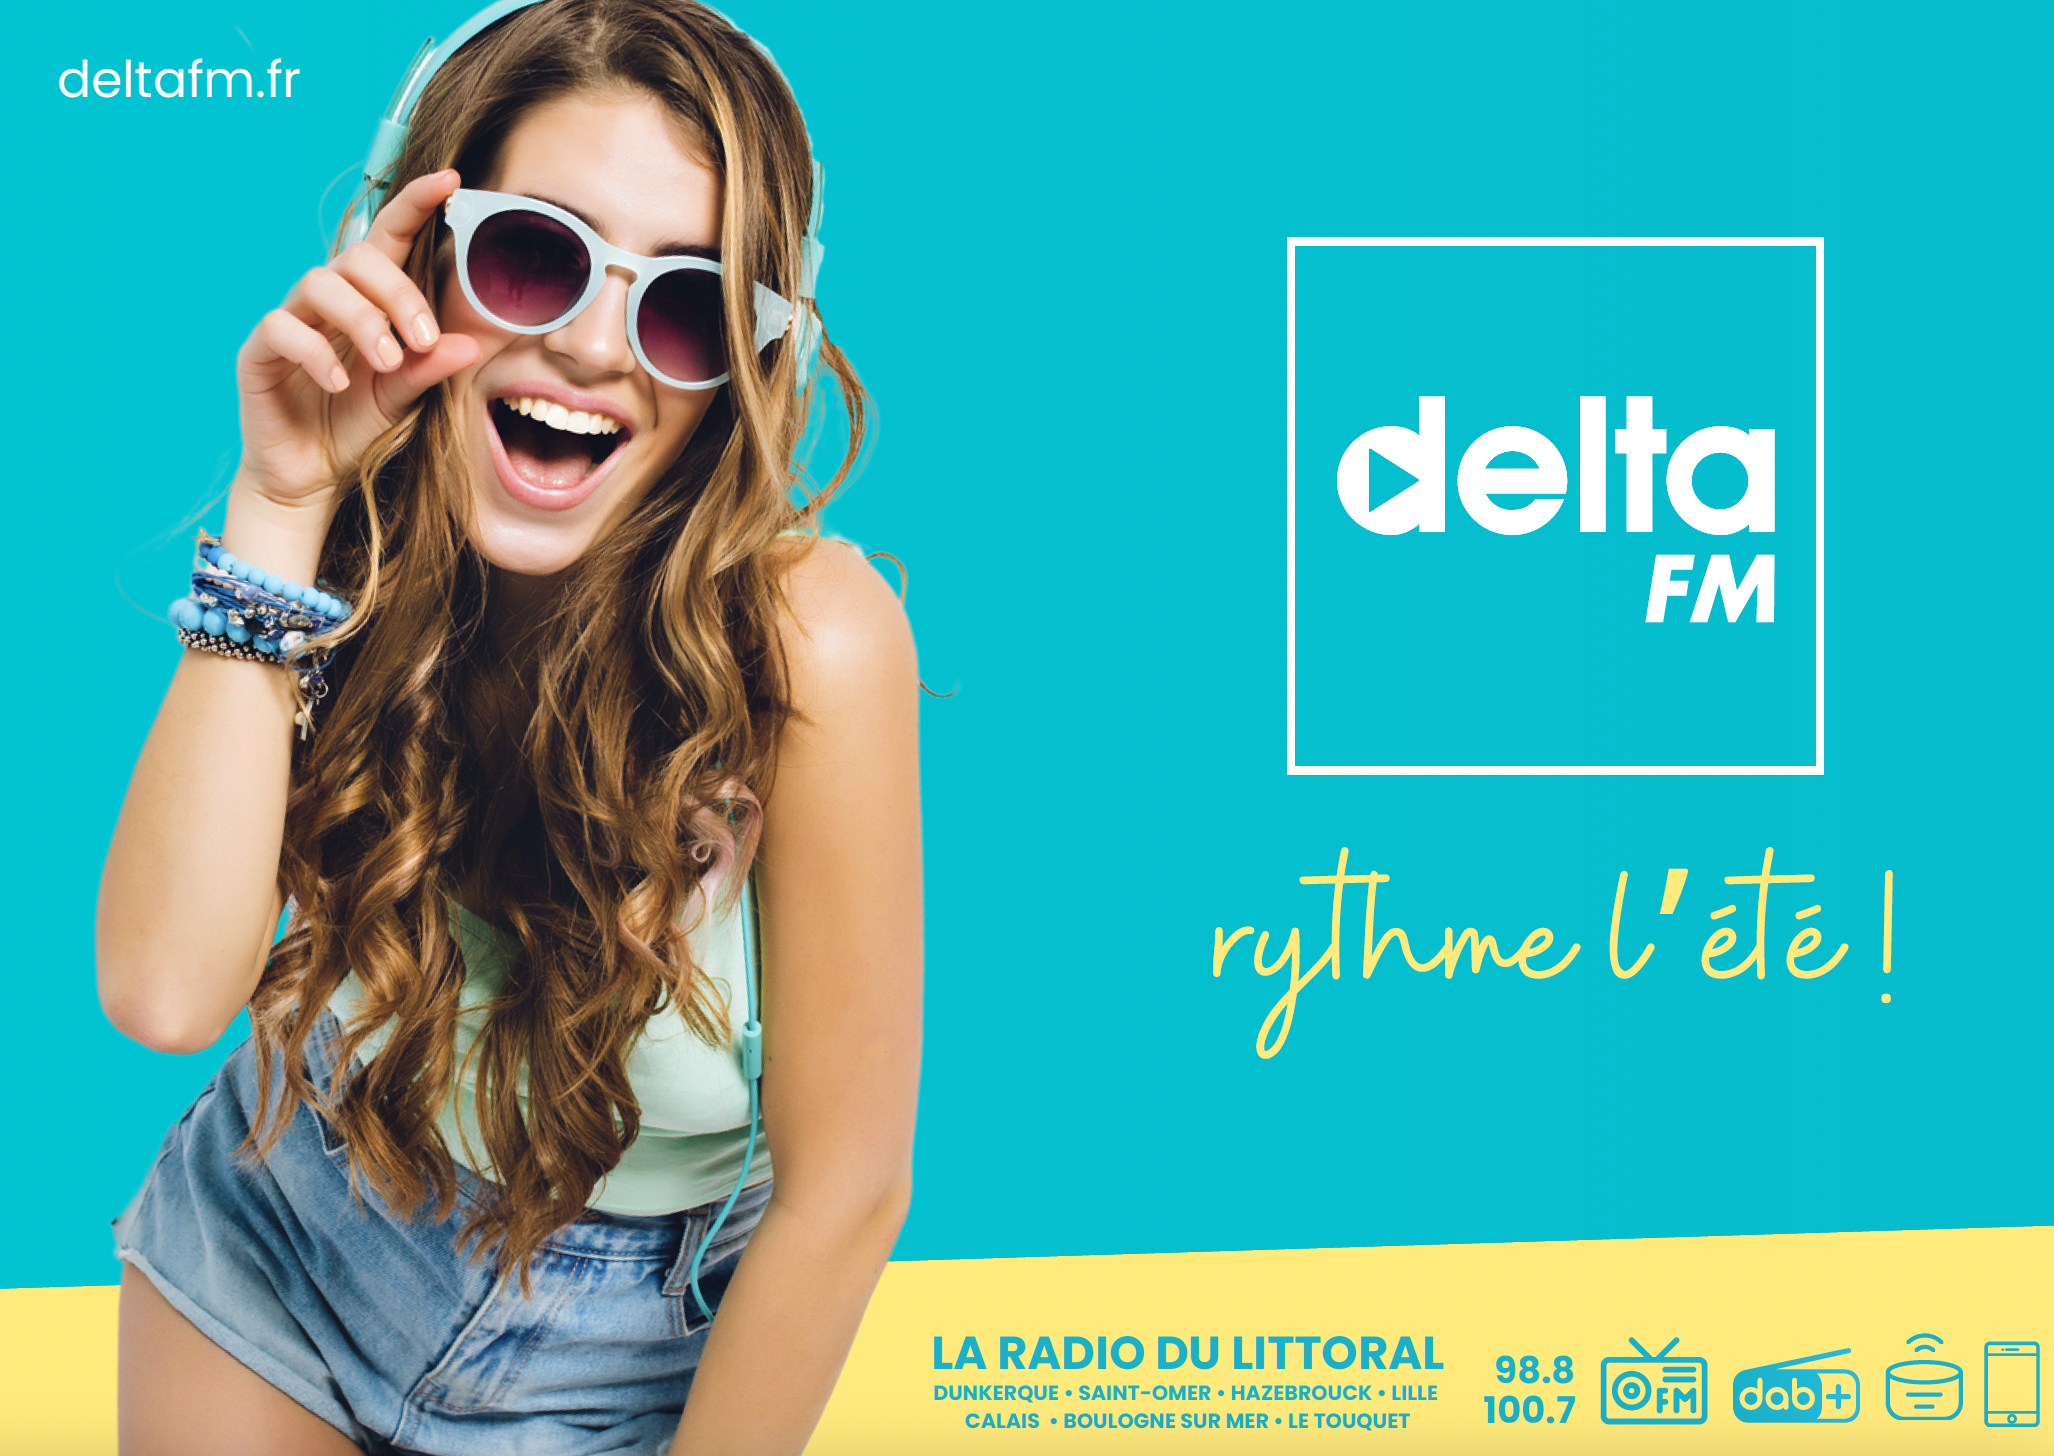 Delta FM, la radio du Littoral, rythme l'été